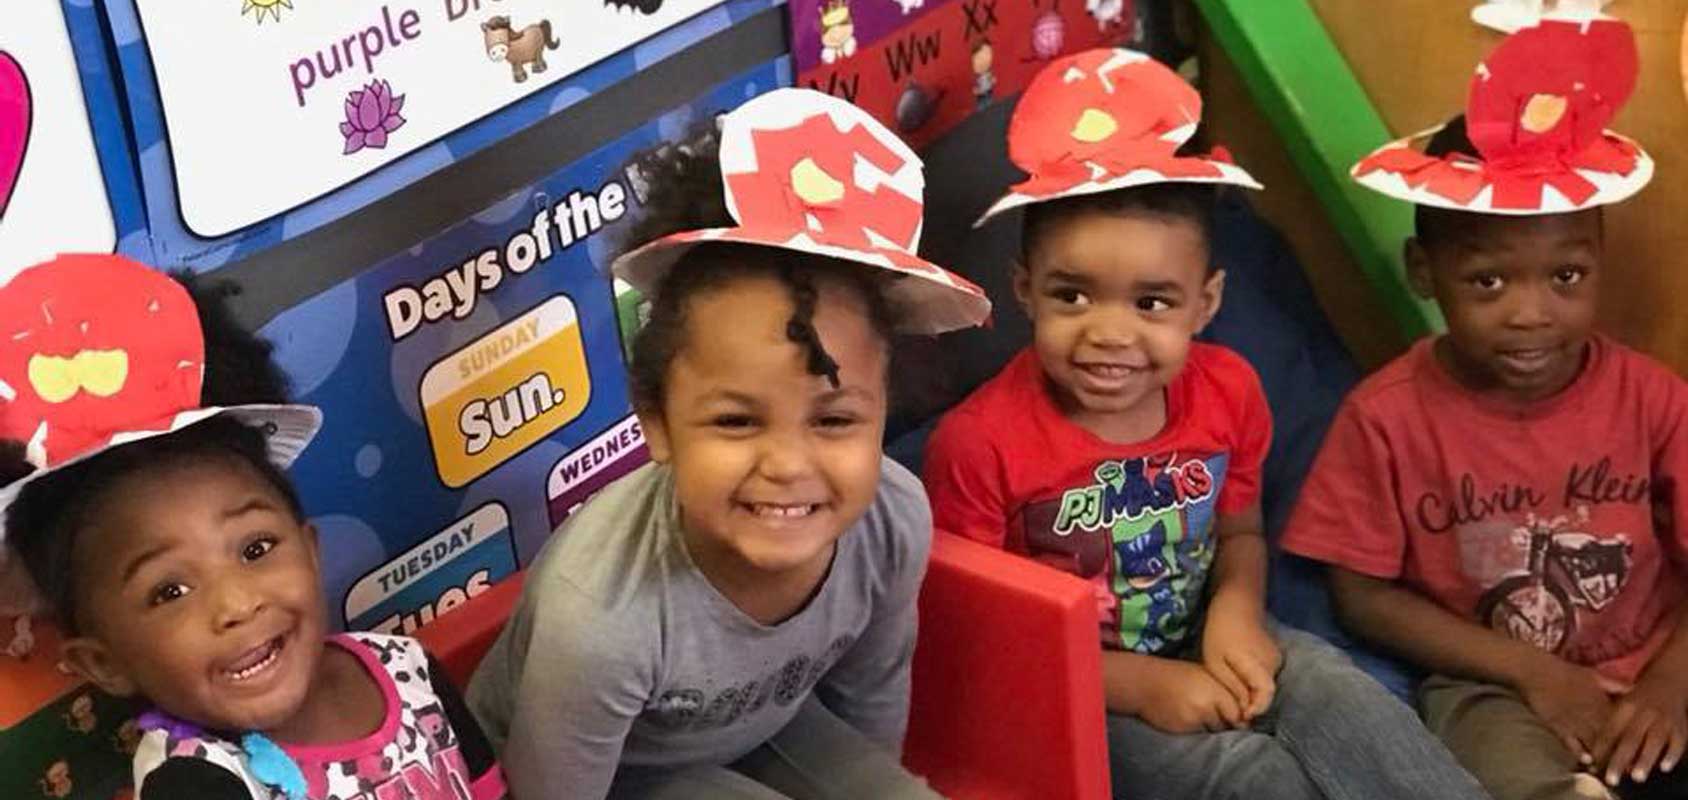 Kids wearing fire hats